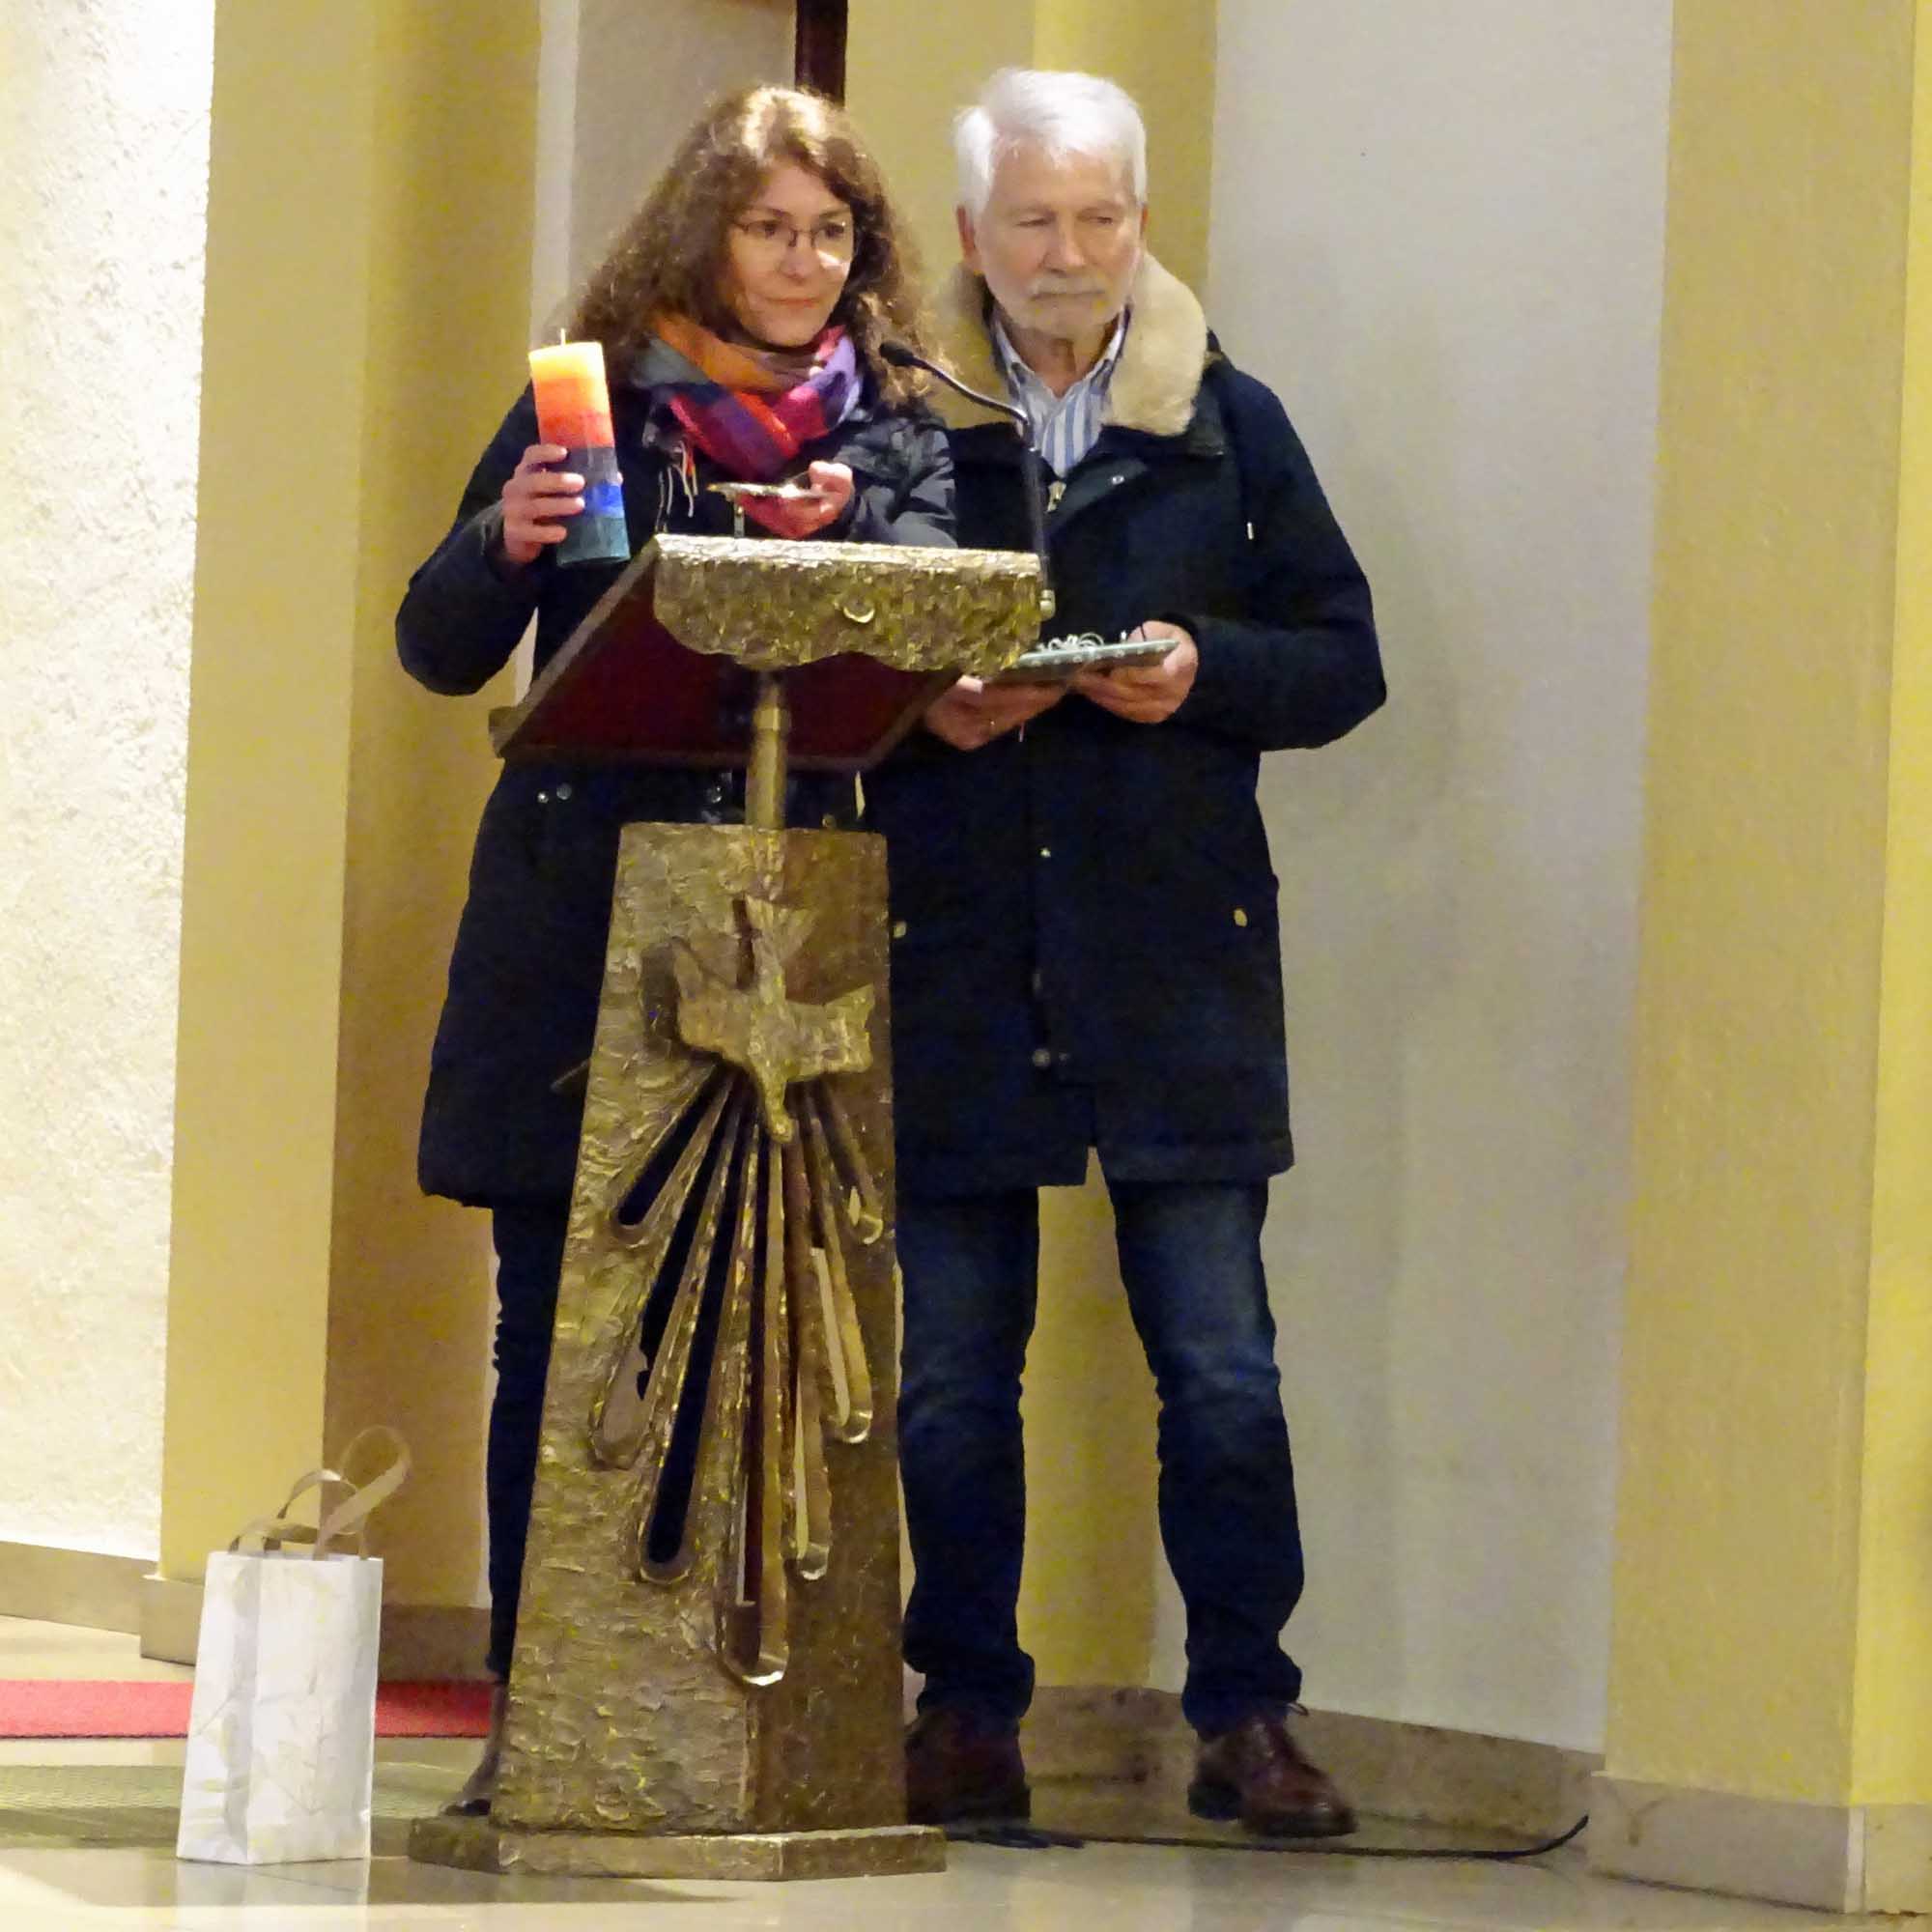 Groß-Gerau, 11. Dezember 2022: Ingrid Reidt (Betriebsseelsorge) und Bruno Schumacher (Kettler-Cardijn-Werk) bei ihrem Grußwort. (c) Markus Schenk